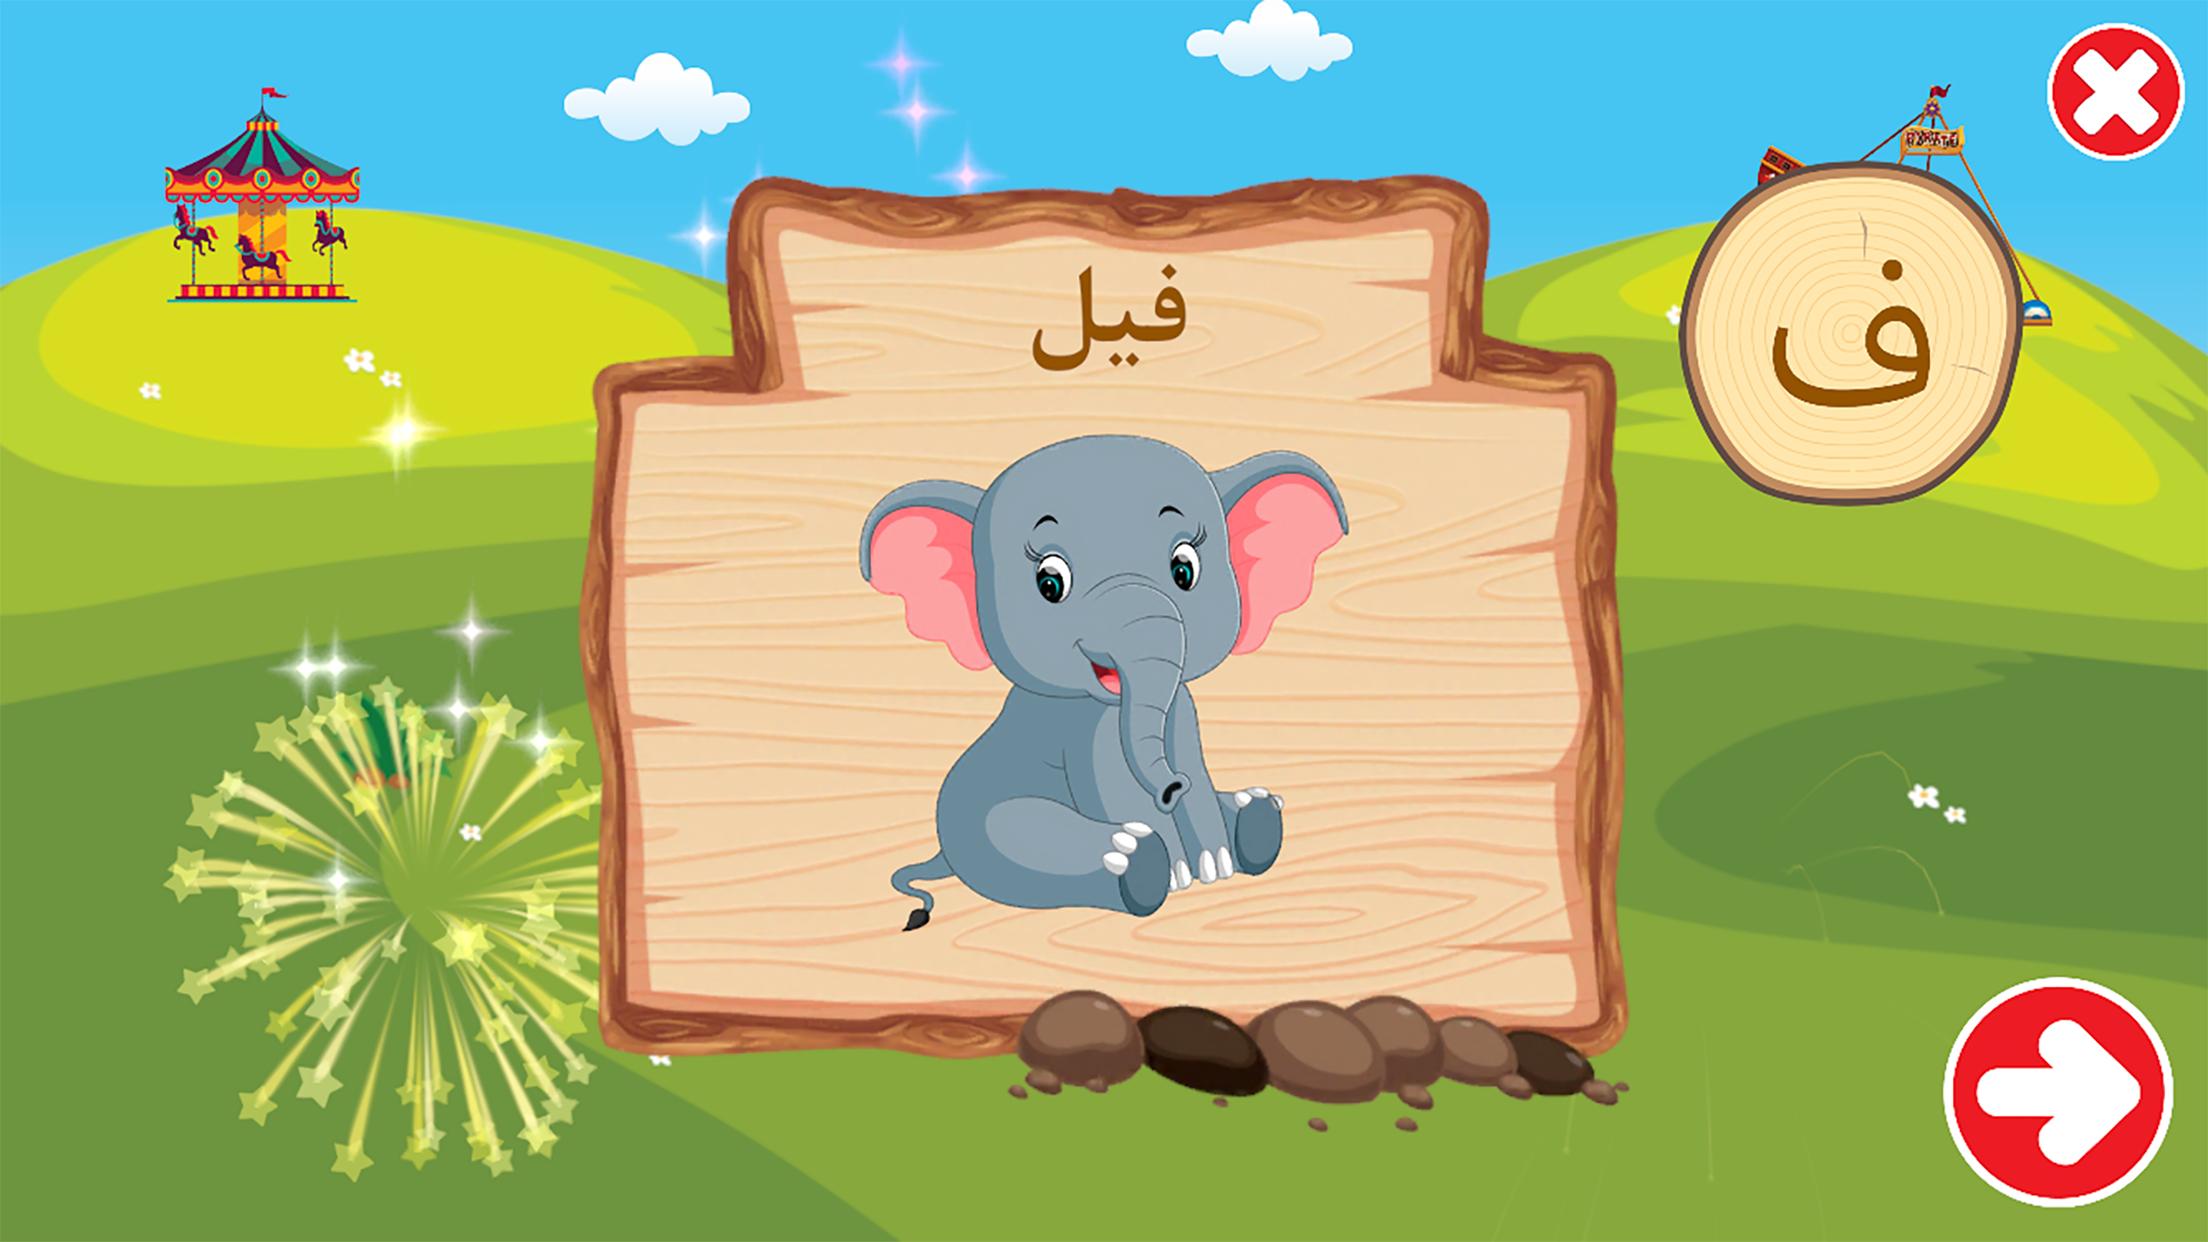 الفبای فارسی کودکان (Farsi alphabet game) 1.11.2 Screenshot 8